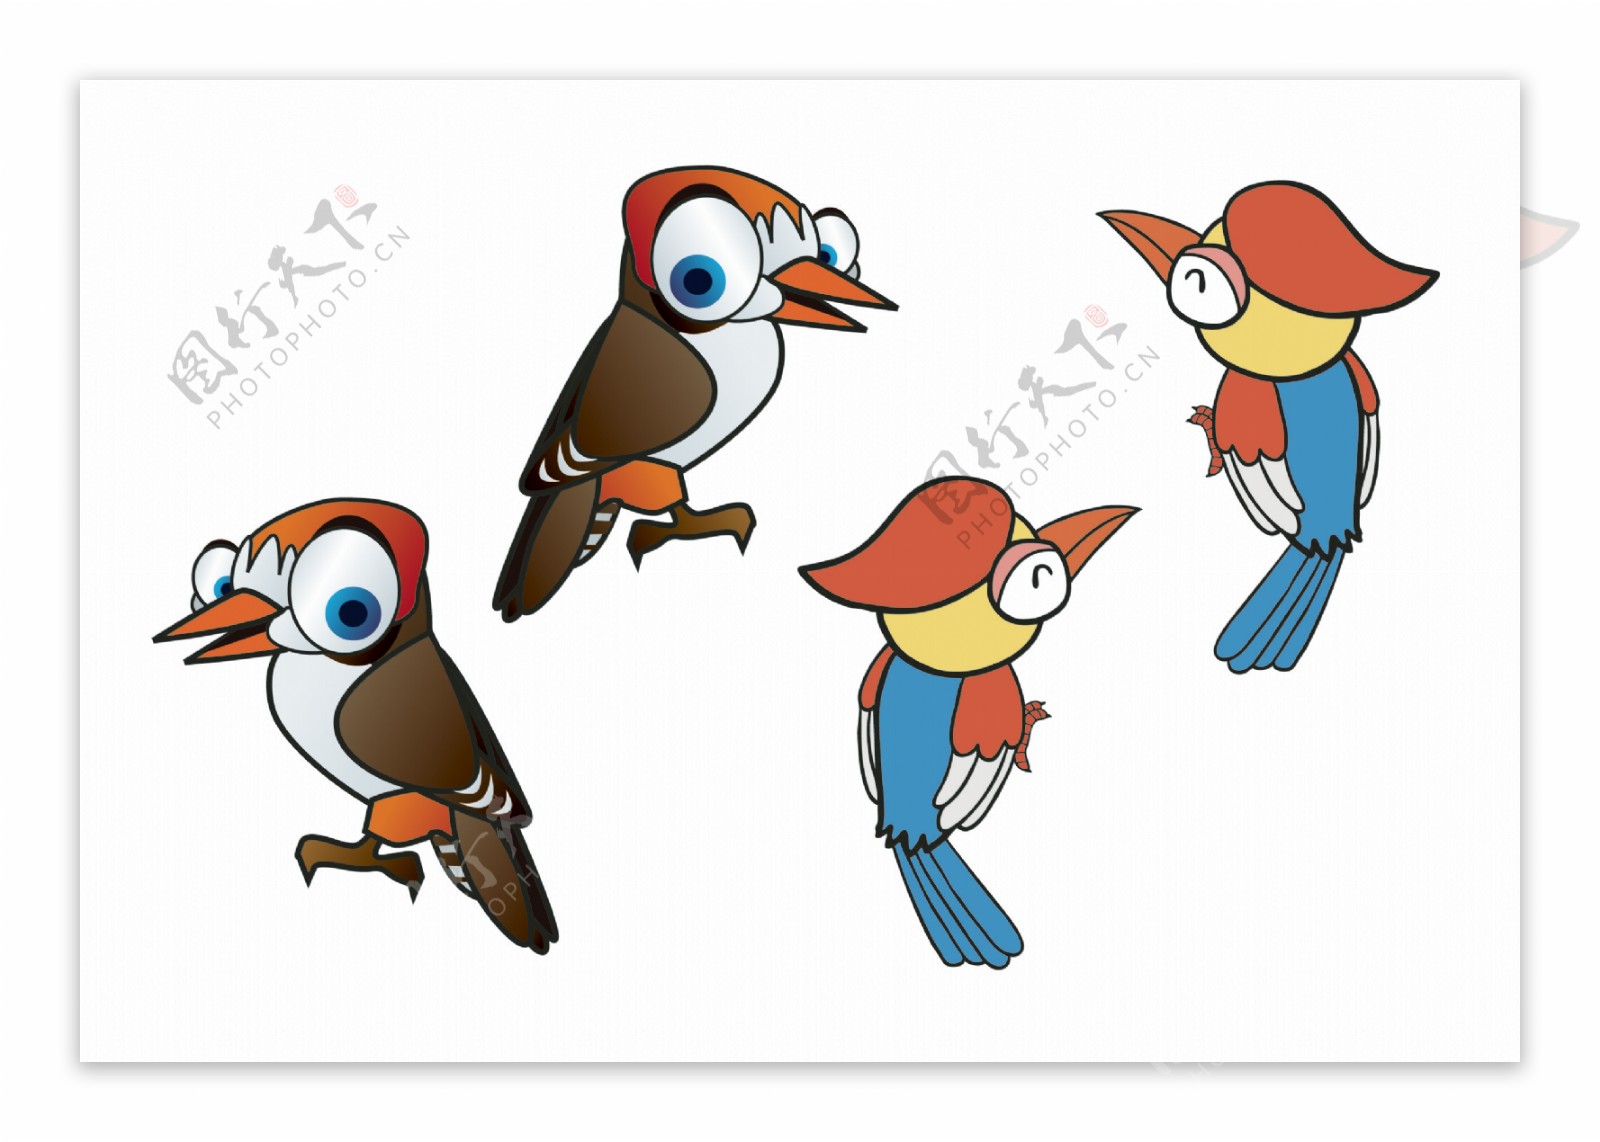 啄木鸟动画平面风格矢量图插图 向量例证. 插画 包括有 森林, 动画片, 平面, 例证, 野生生物, 啄木鸟 - 254823260